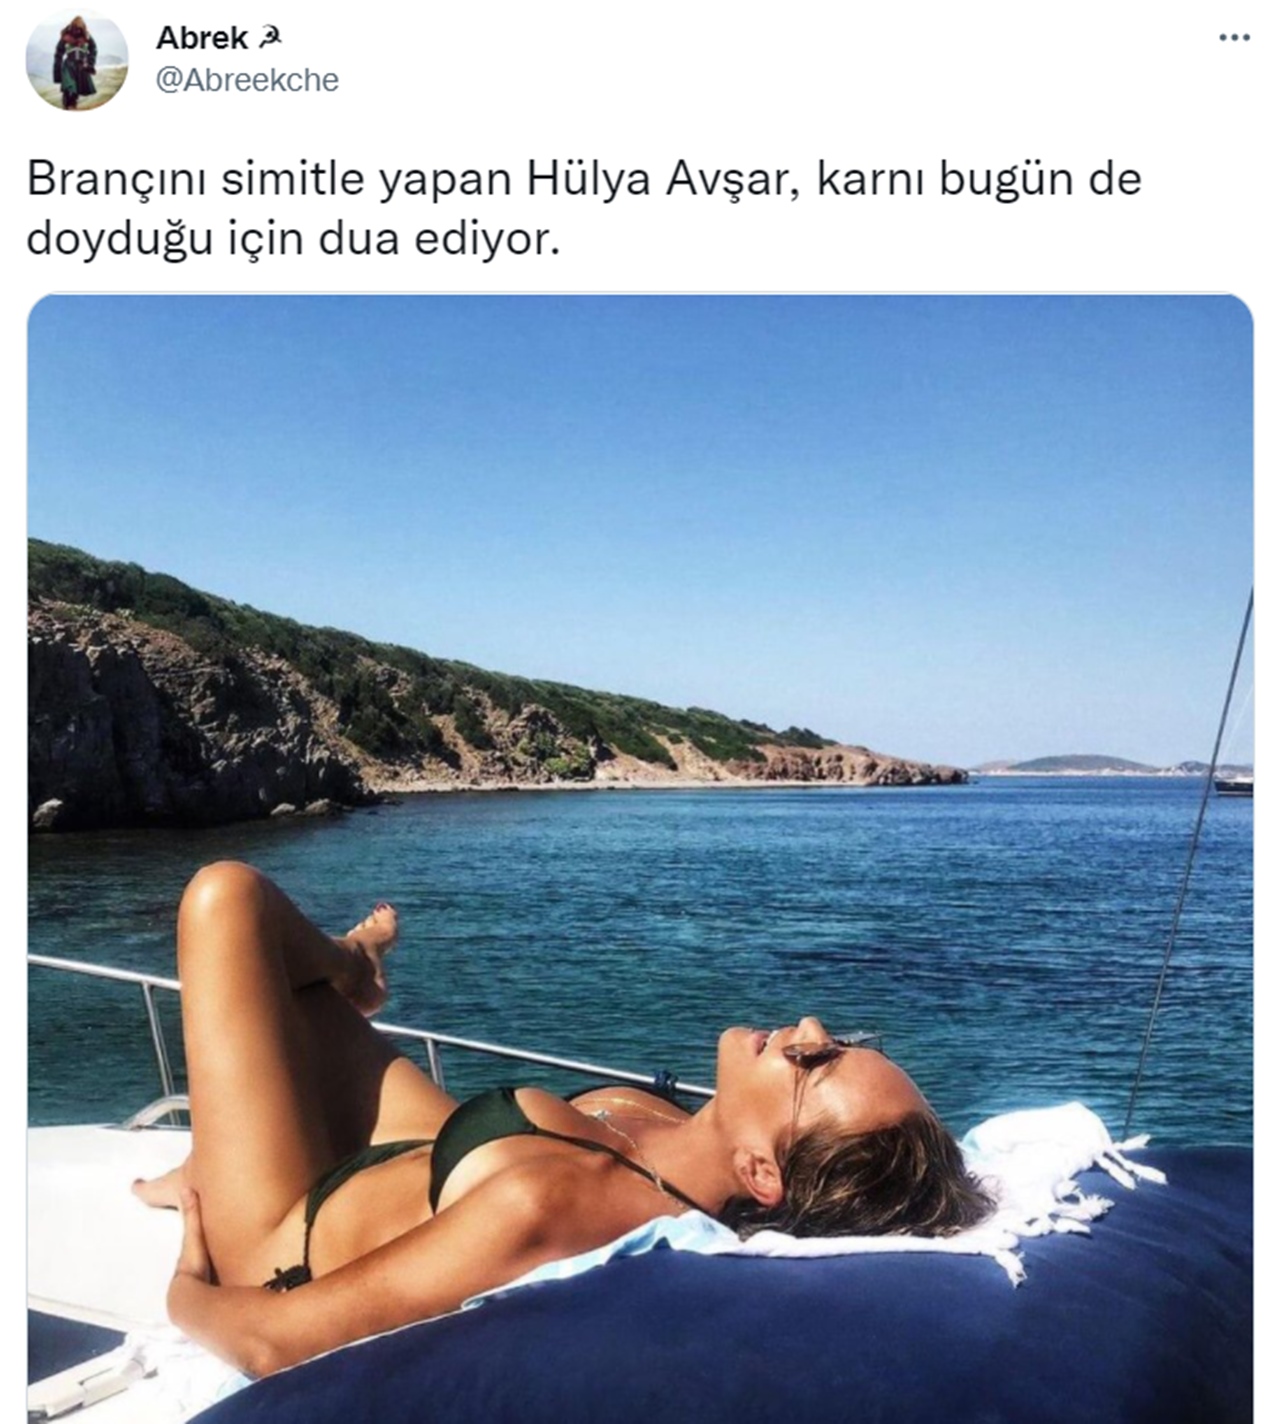 Hülya Avşar News